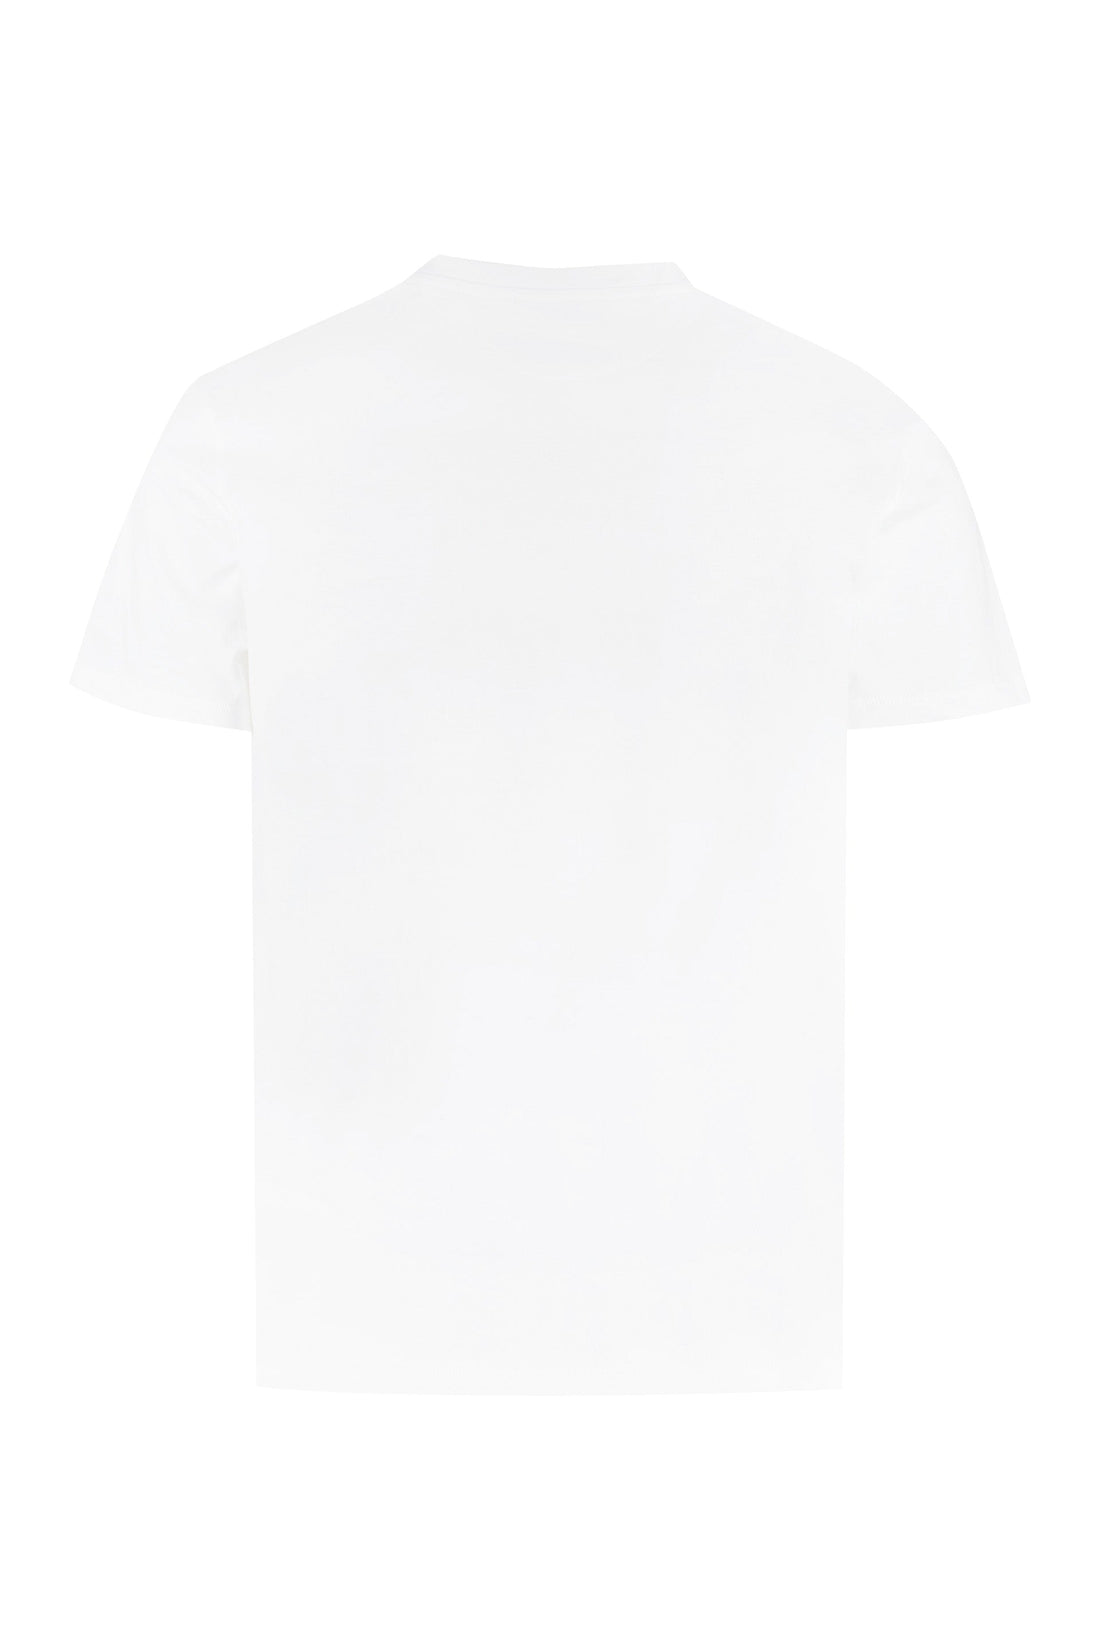 Valentino-OUTLET-SALE-Cotton crew-neck T-shirt-ARCHIVIST